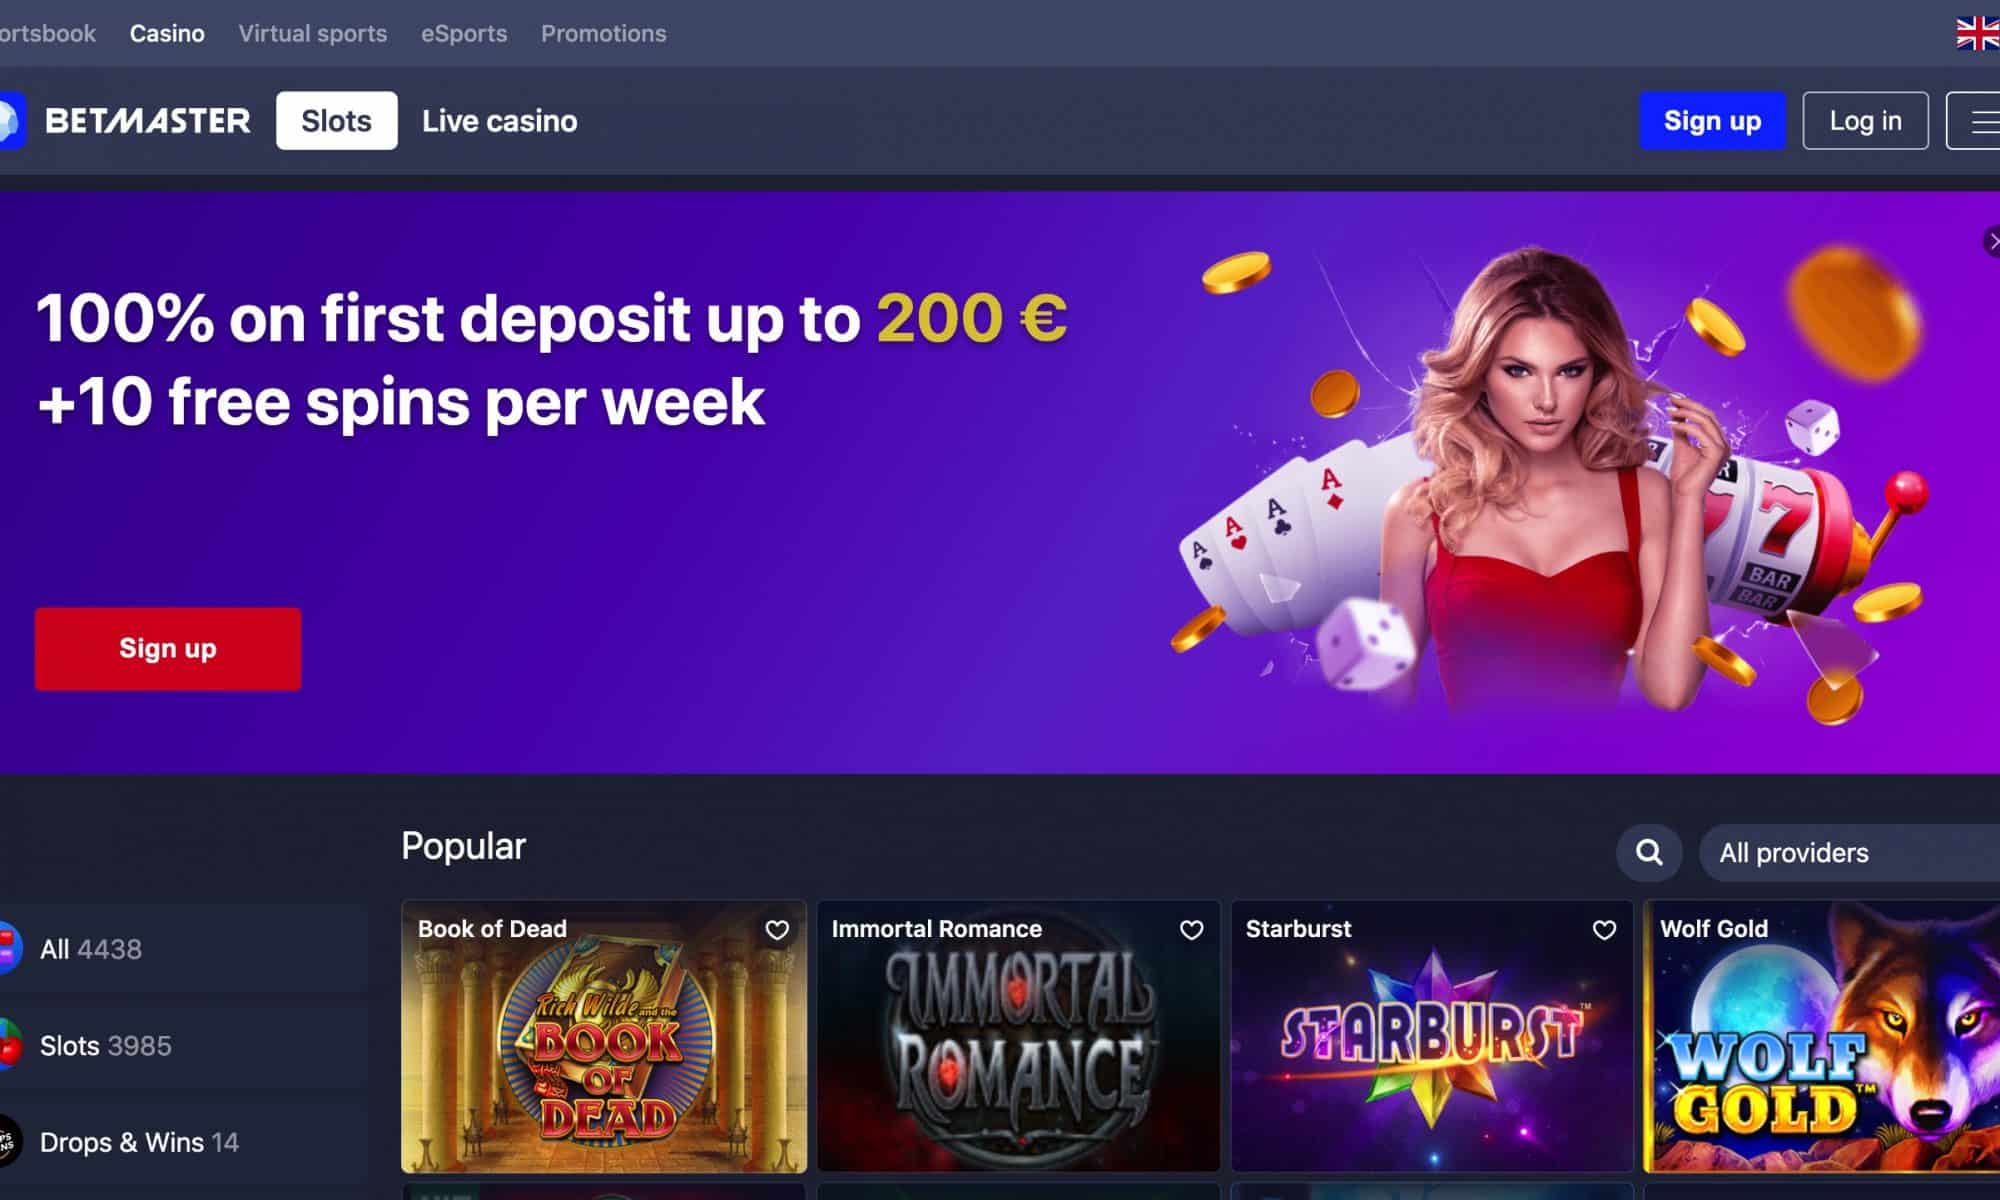 BetMaster Casino - Get 100% deposit bonus + 10 spins per week